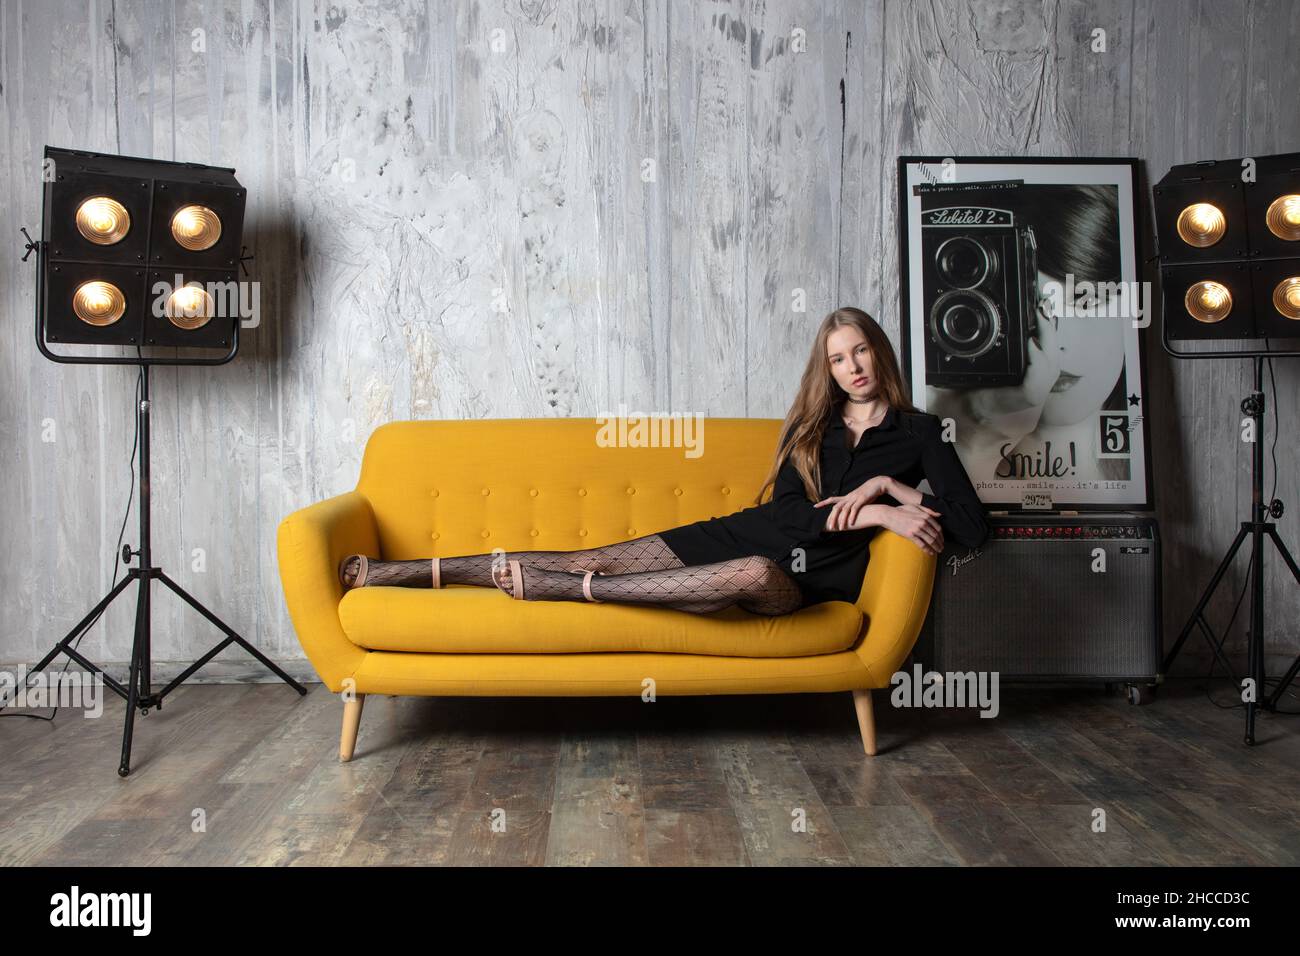 Eine schöne Studioaufnahme eines atemberaubenden blonden professionellen Models, das auf einem gelben Sofa mit einem schwarzen kurzen Kleid, hohen Absätzen und Strumpfhosen sitzt Stockfoto